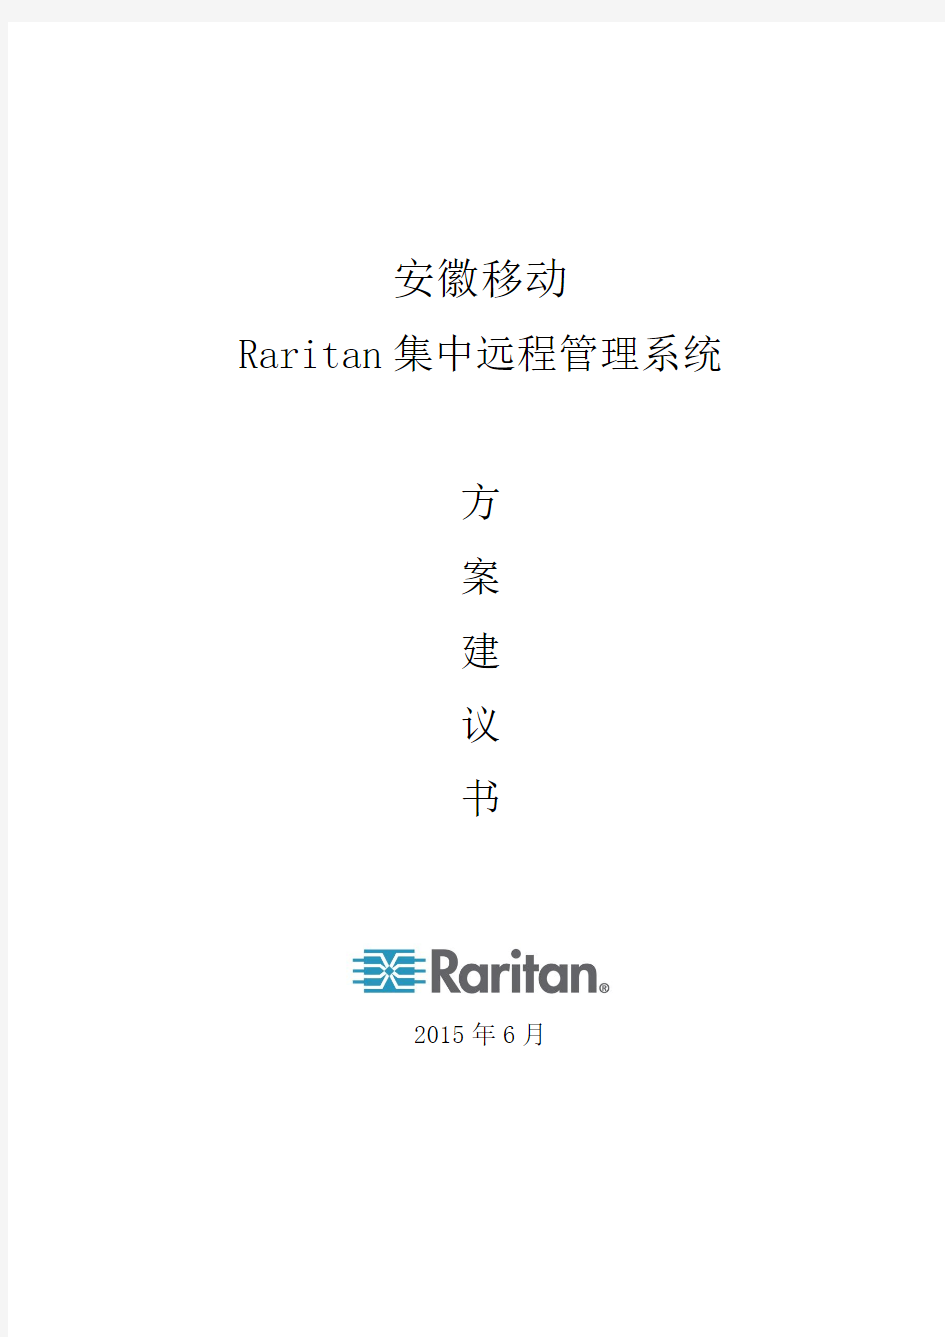 安徽移动Raritan技术方案-20131209